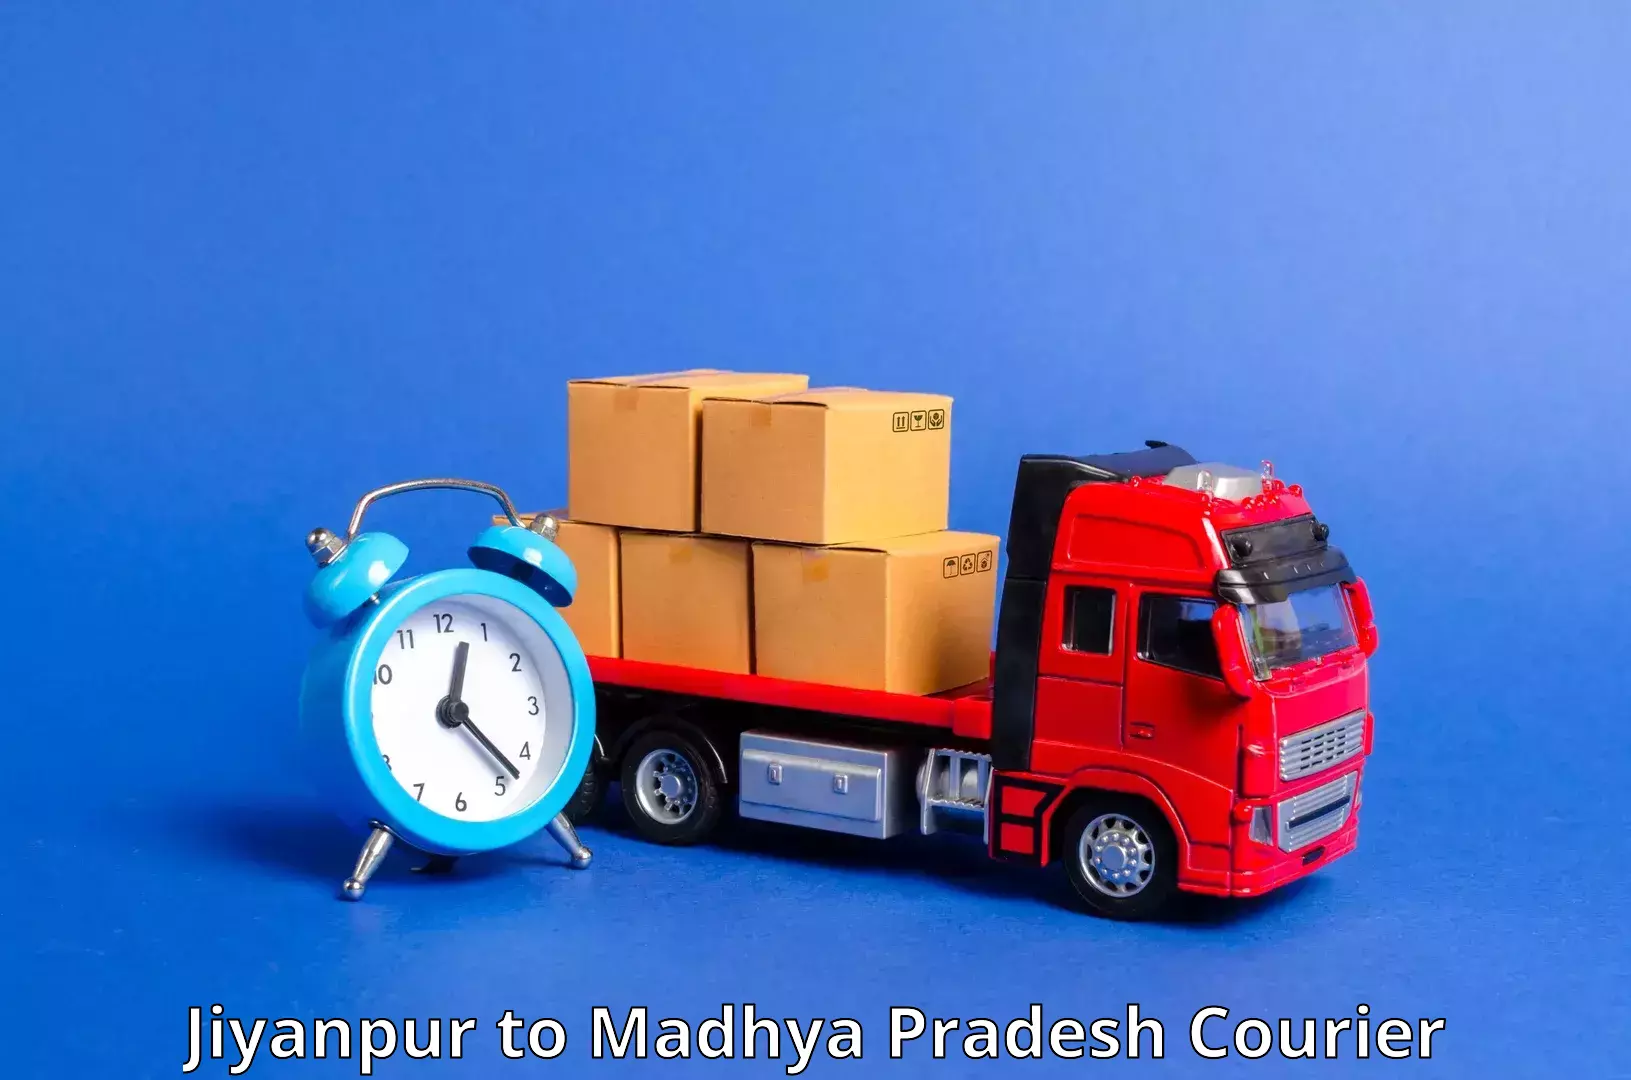 Next-generation courier services Jiyanpur to Badnagar